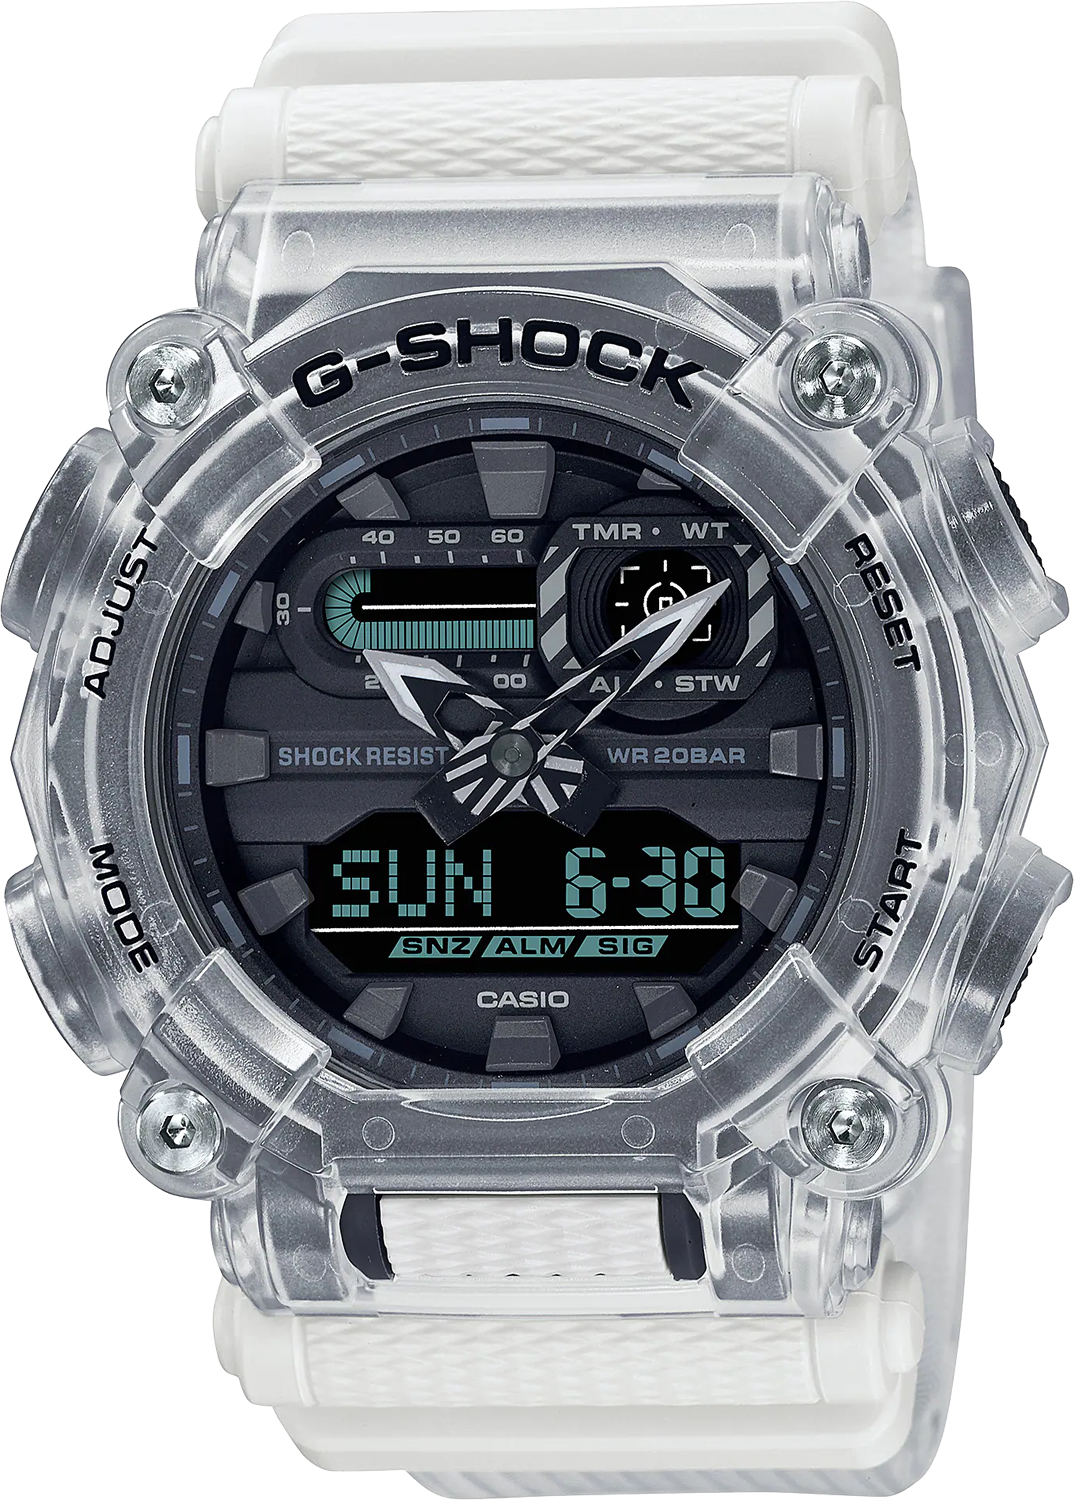 Наручные часы Casio GA-900SKL-7A цена и фото